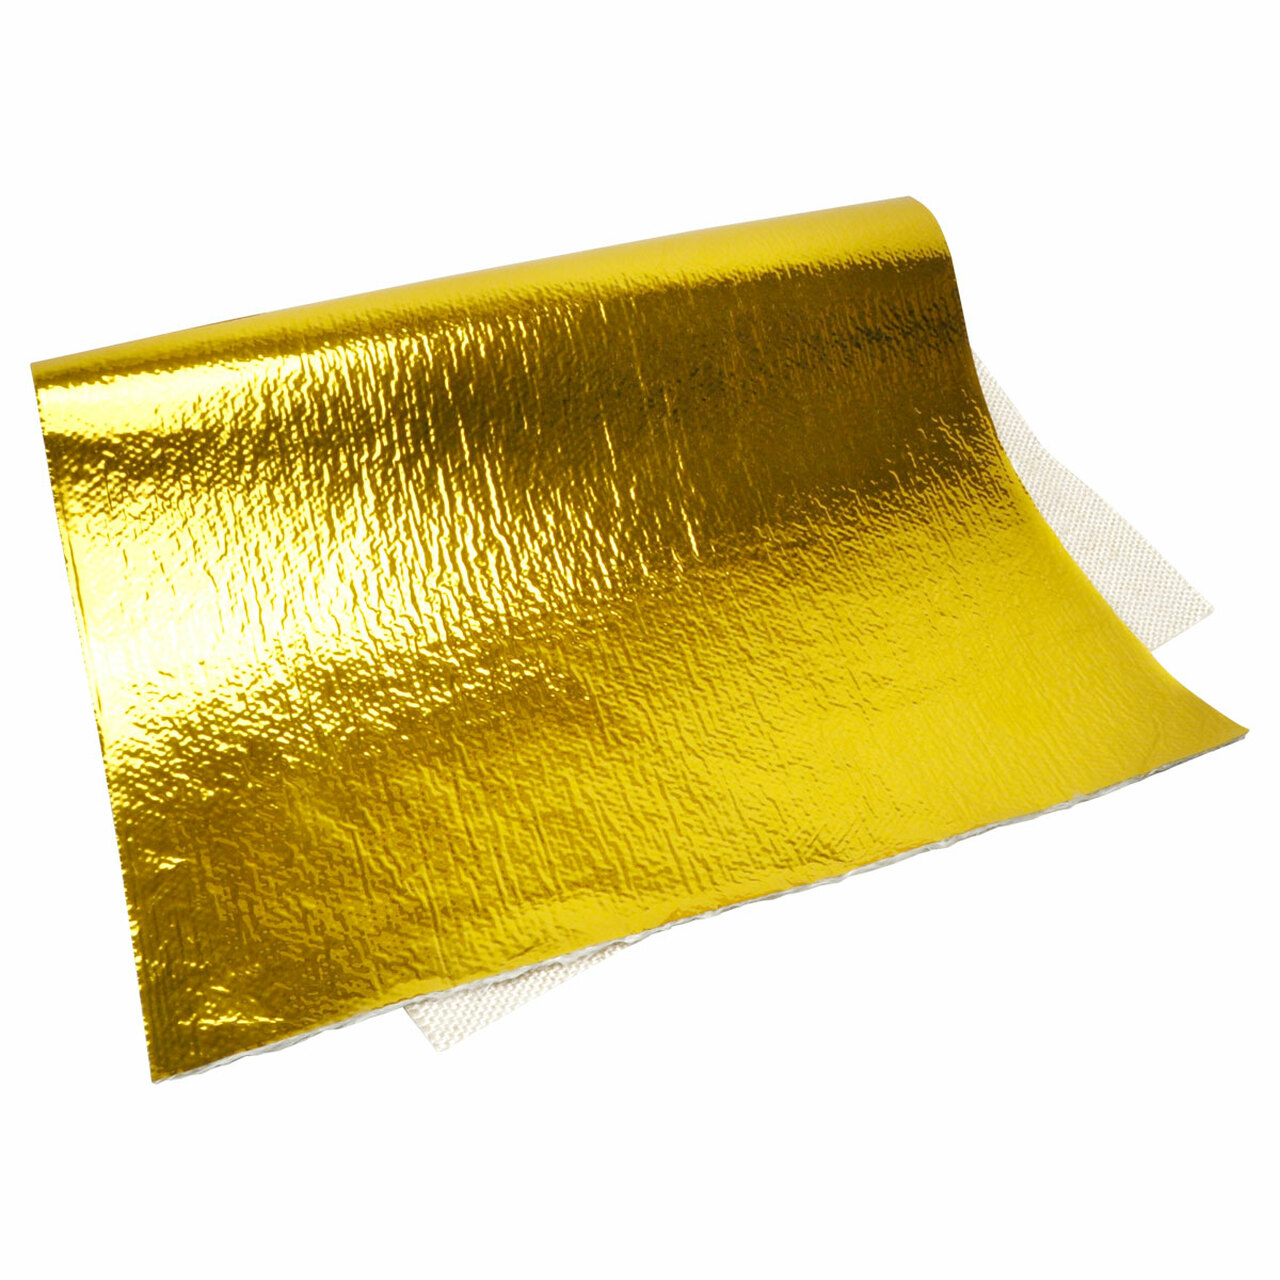 DEI Heat Screen GOLD - Foglio termico adesivo isolante oro 450